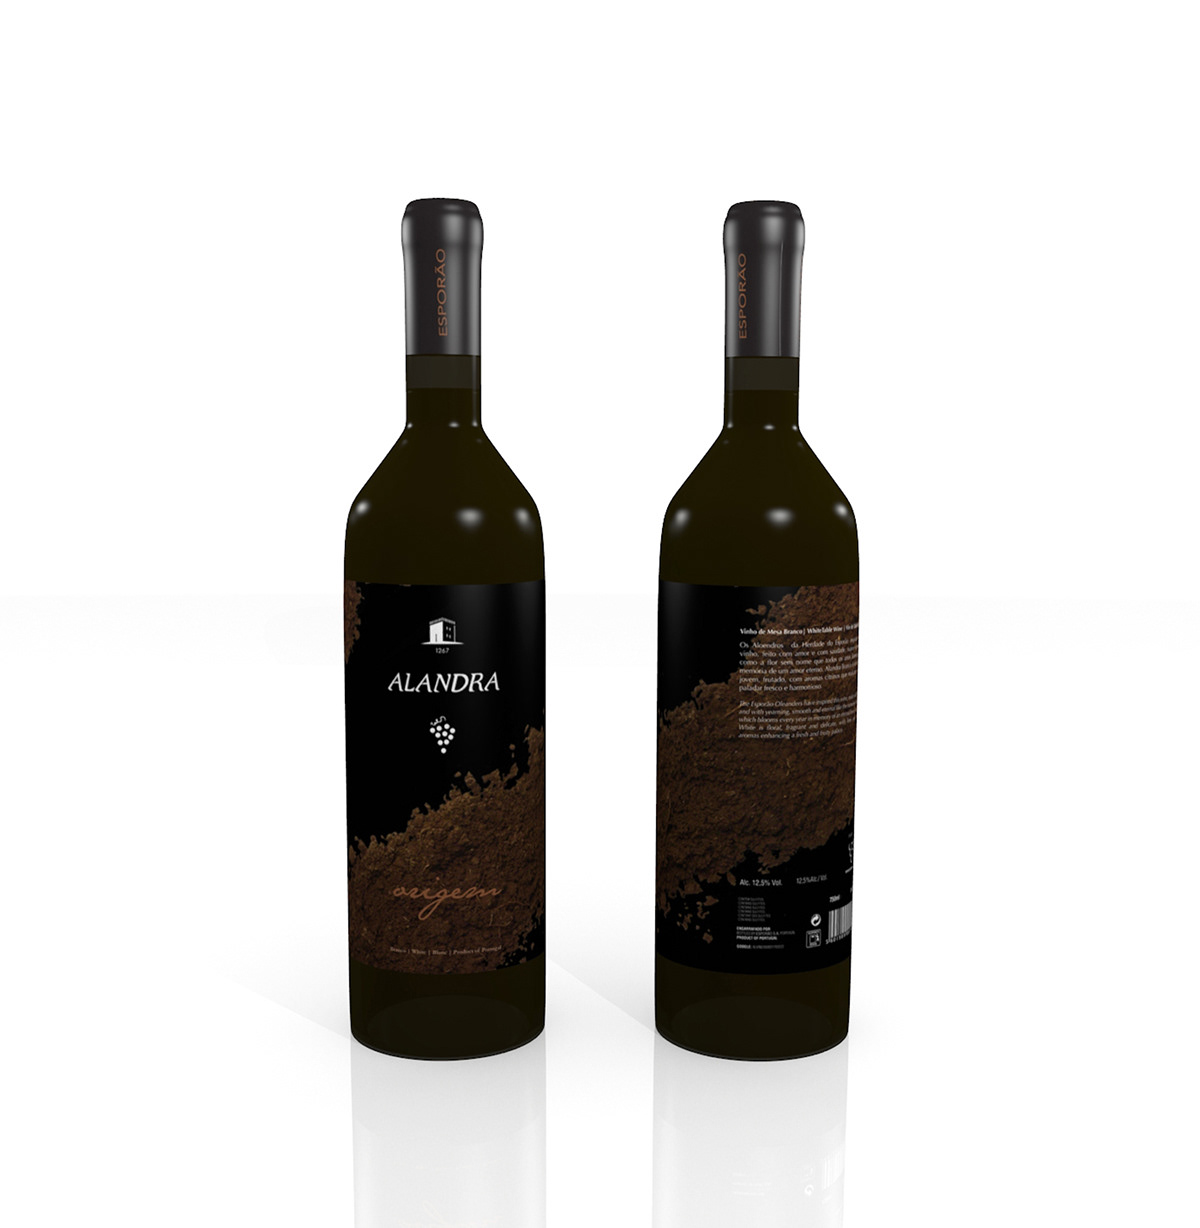 Alandra wine labels herdade do esporão